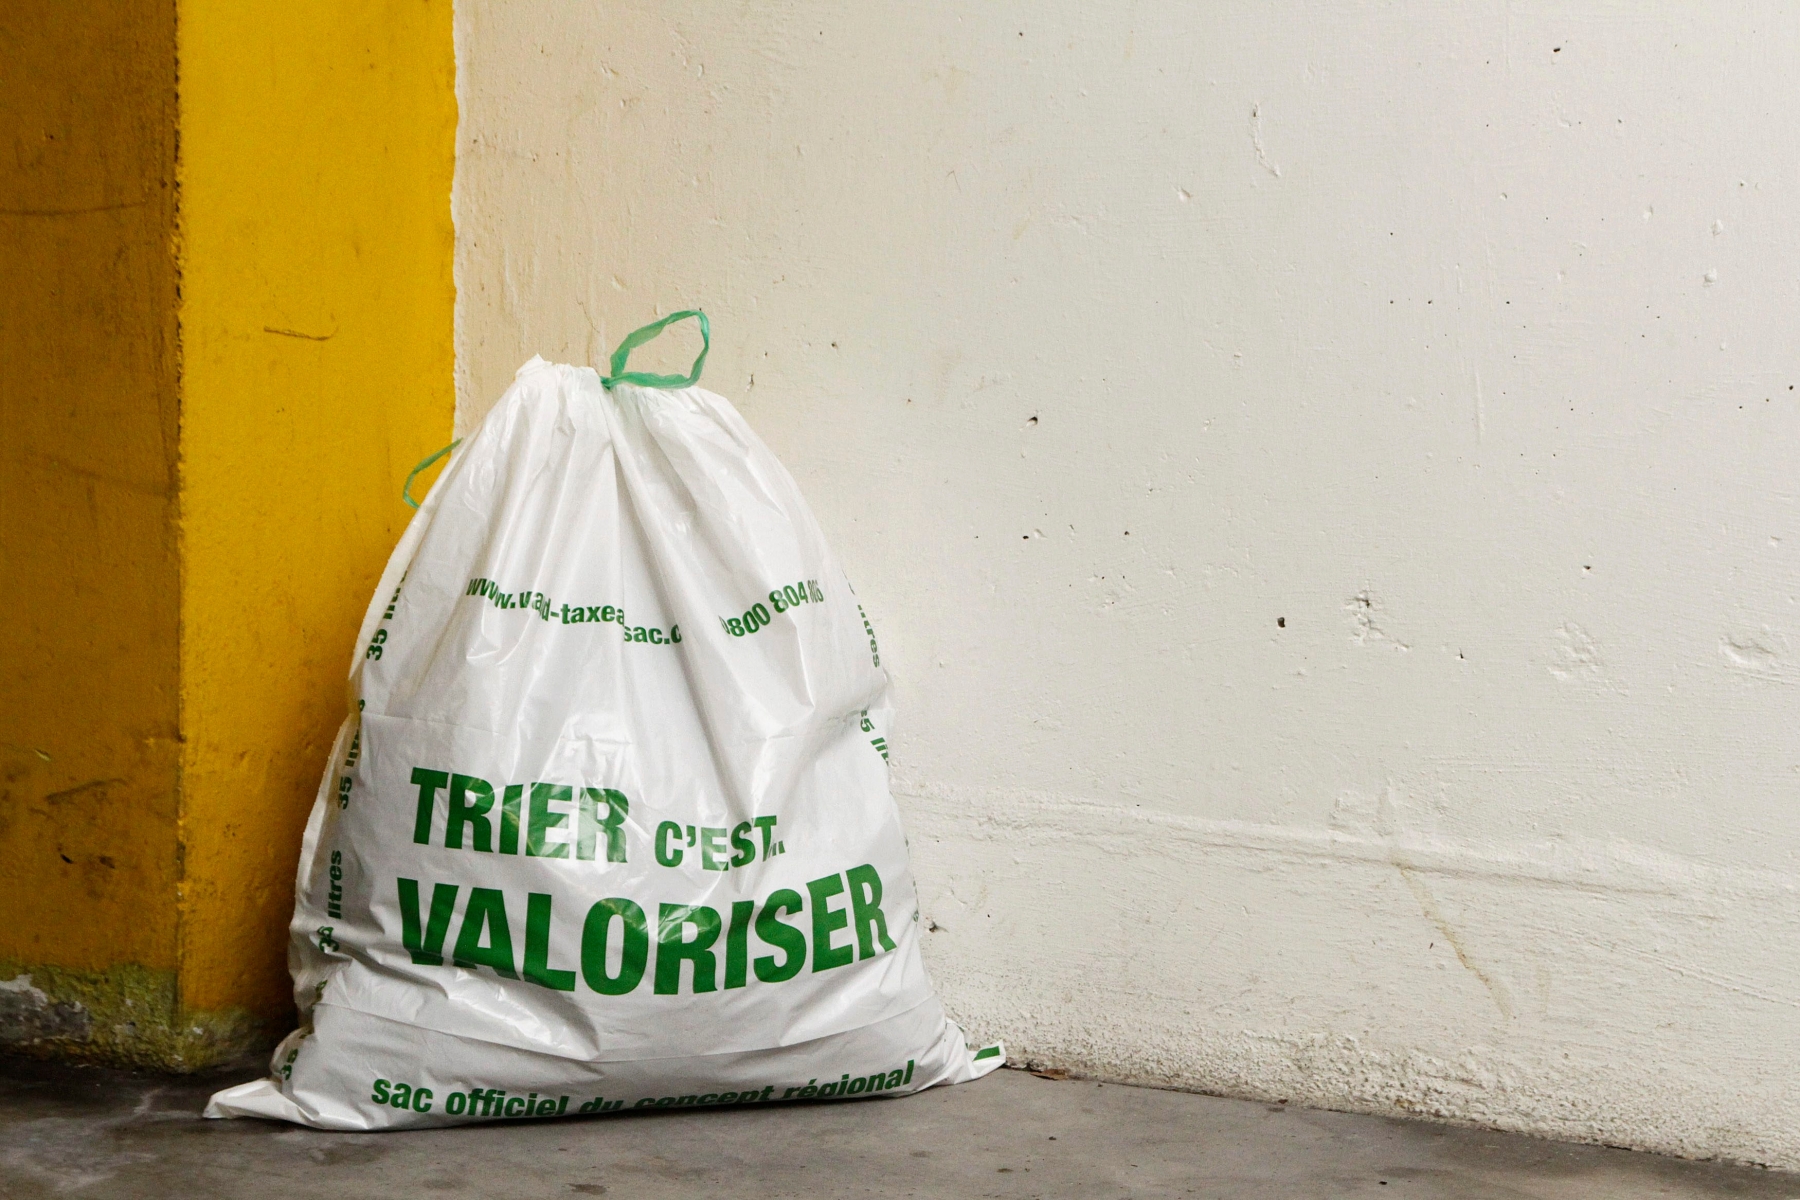 Taxe au sac, nouveau sac poubelle en vigueur le 1er janvier 2013.
(Samuel Fromhold/La Côte) TAXE AU SAC / NOUVEAU SAC POUBELLE